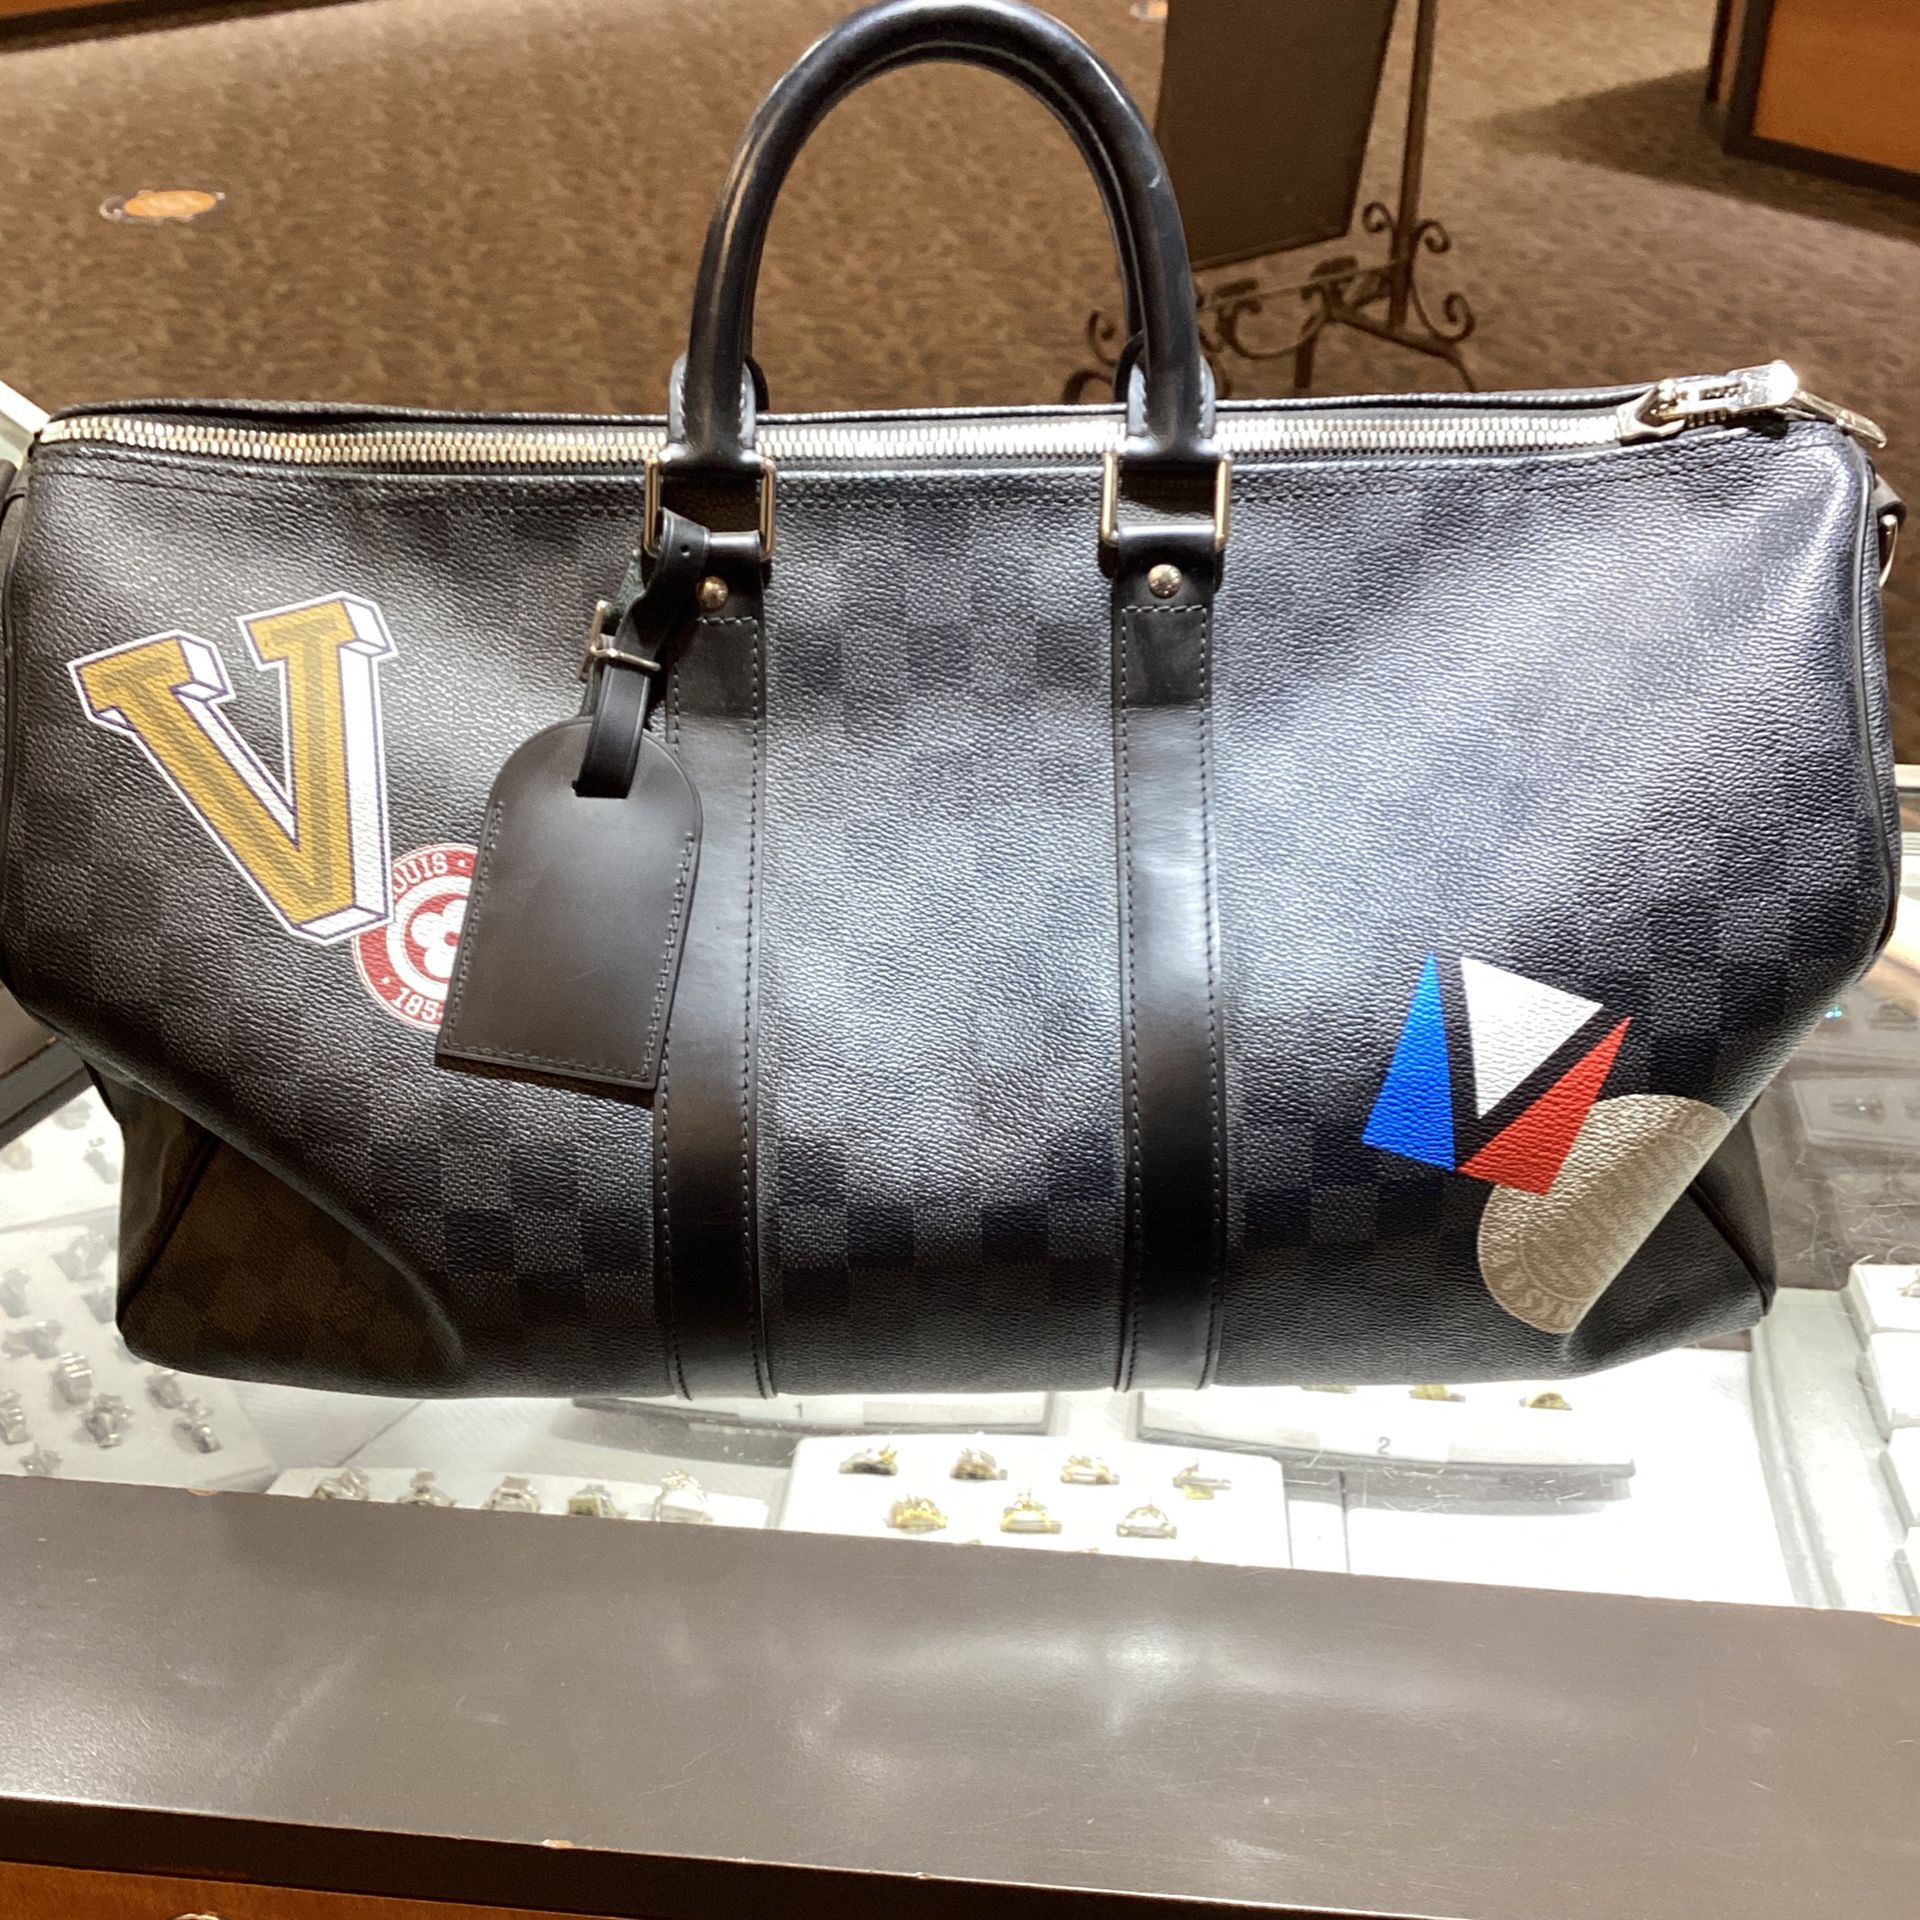 Louis Vuitton duffle Bag for Sale in Detroit, MI - OfferUp